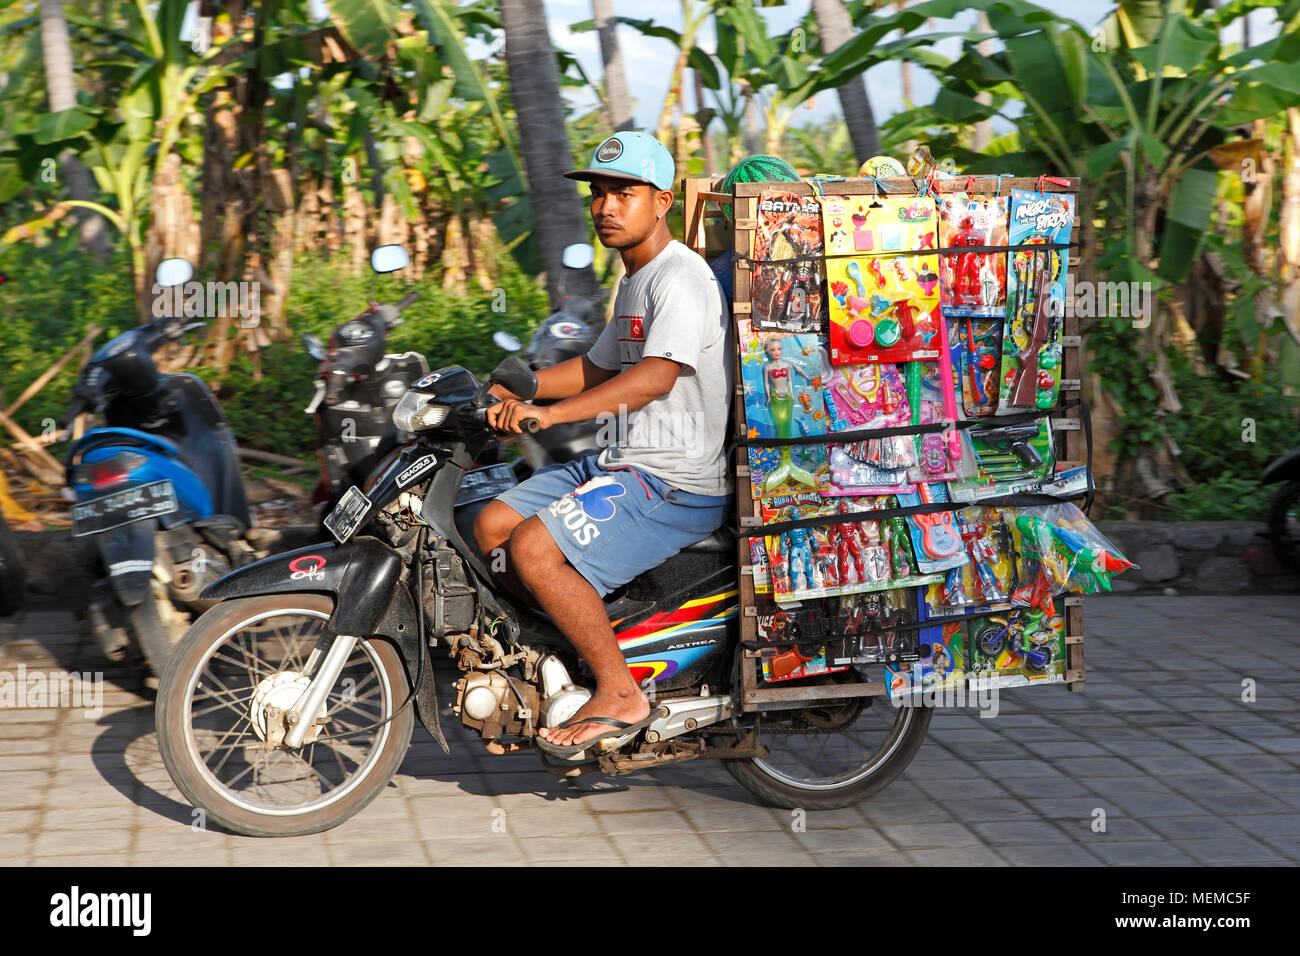 Vendeur de rue Mobile, transportant ses marchandises des jouets pour enfants en plastique à l'arrière de sa moto. Lovina, Bali, Indonésie Banque D'Images